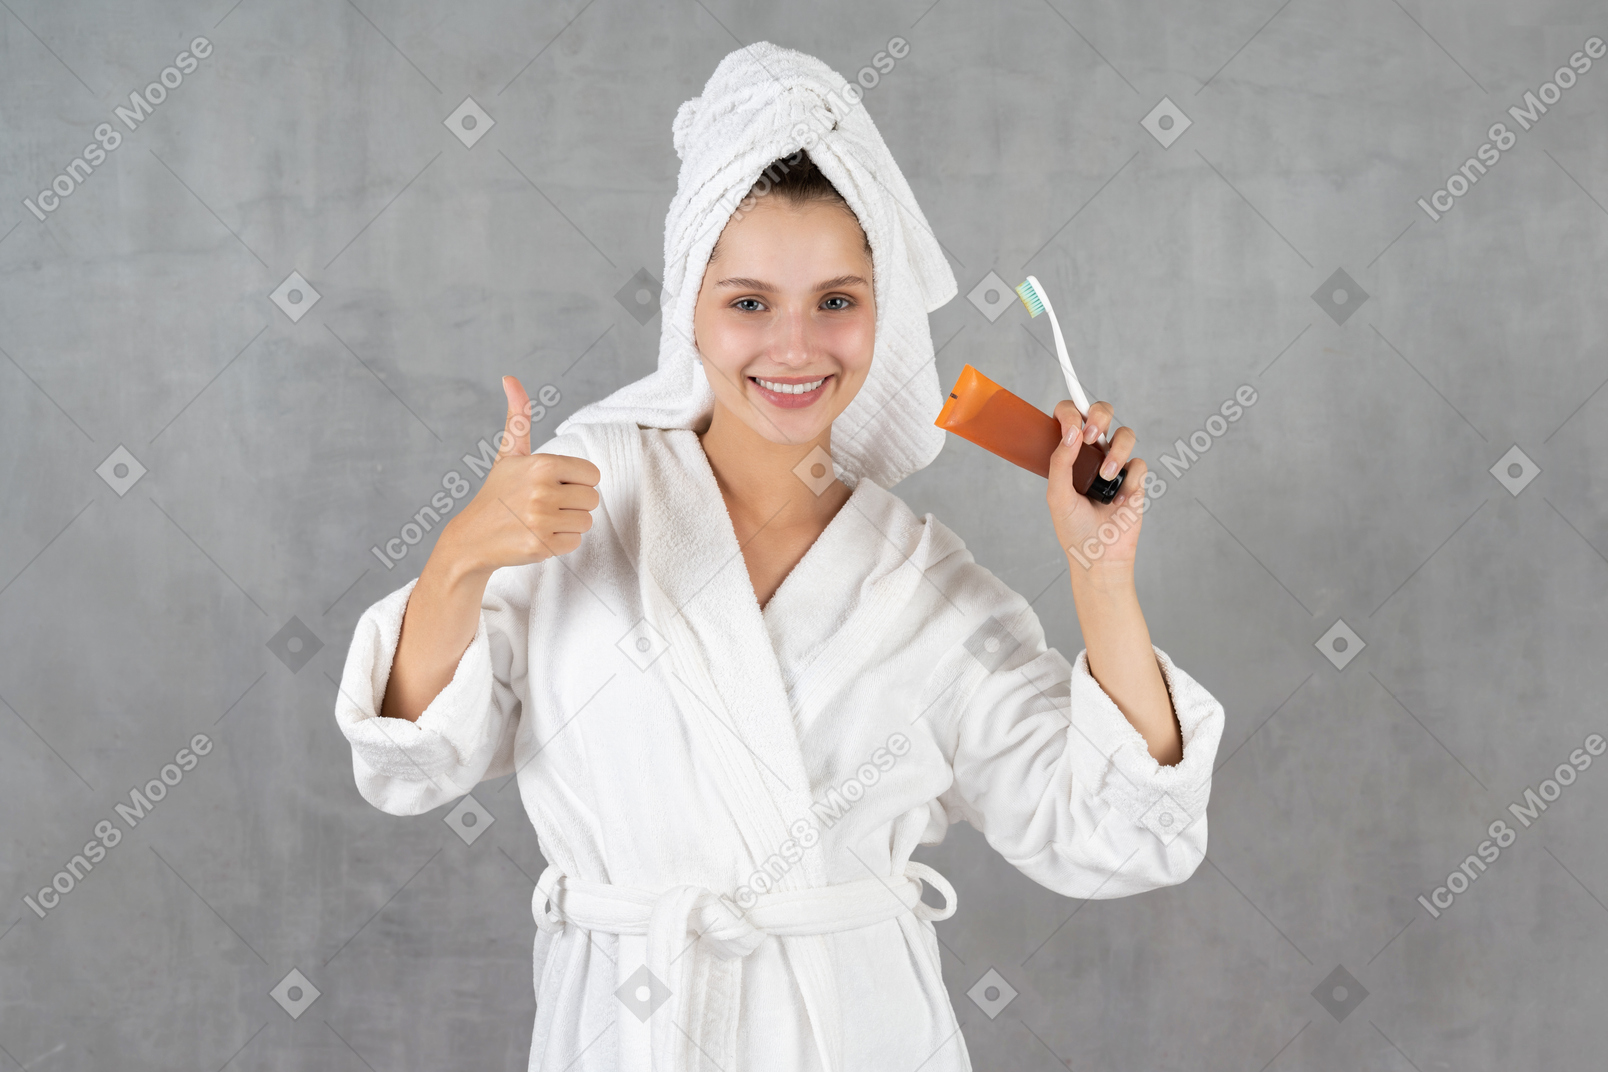 엄지손가락을 보여주는 목욕 가운에 웃는 여자